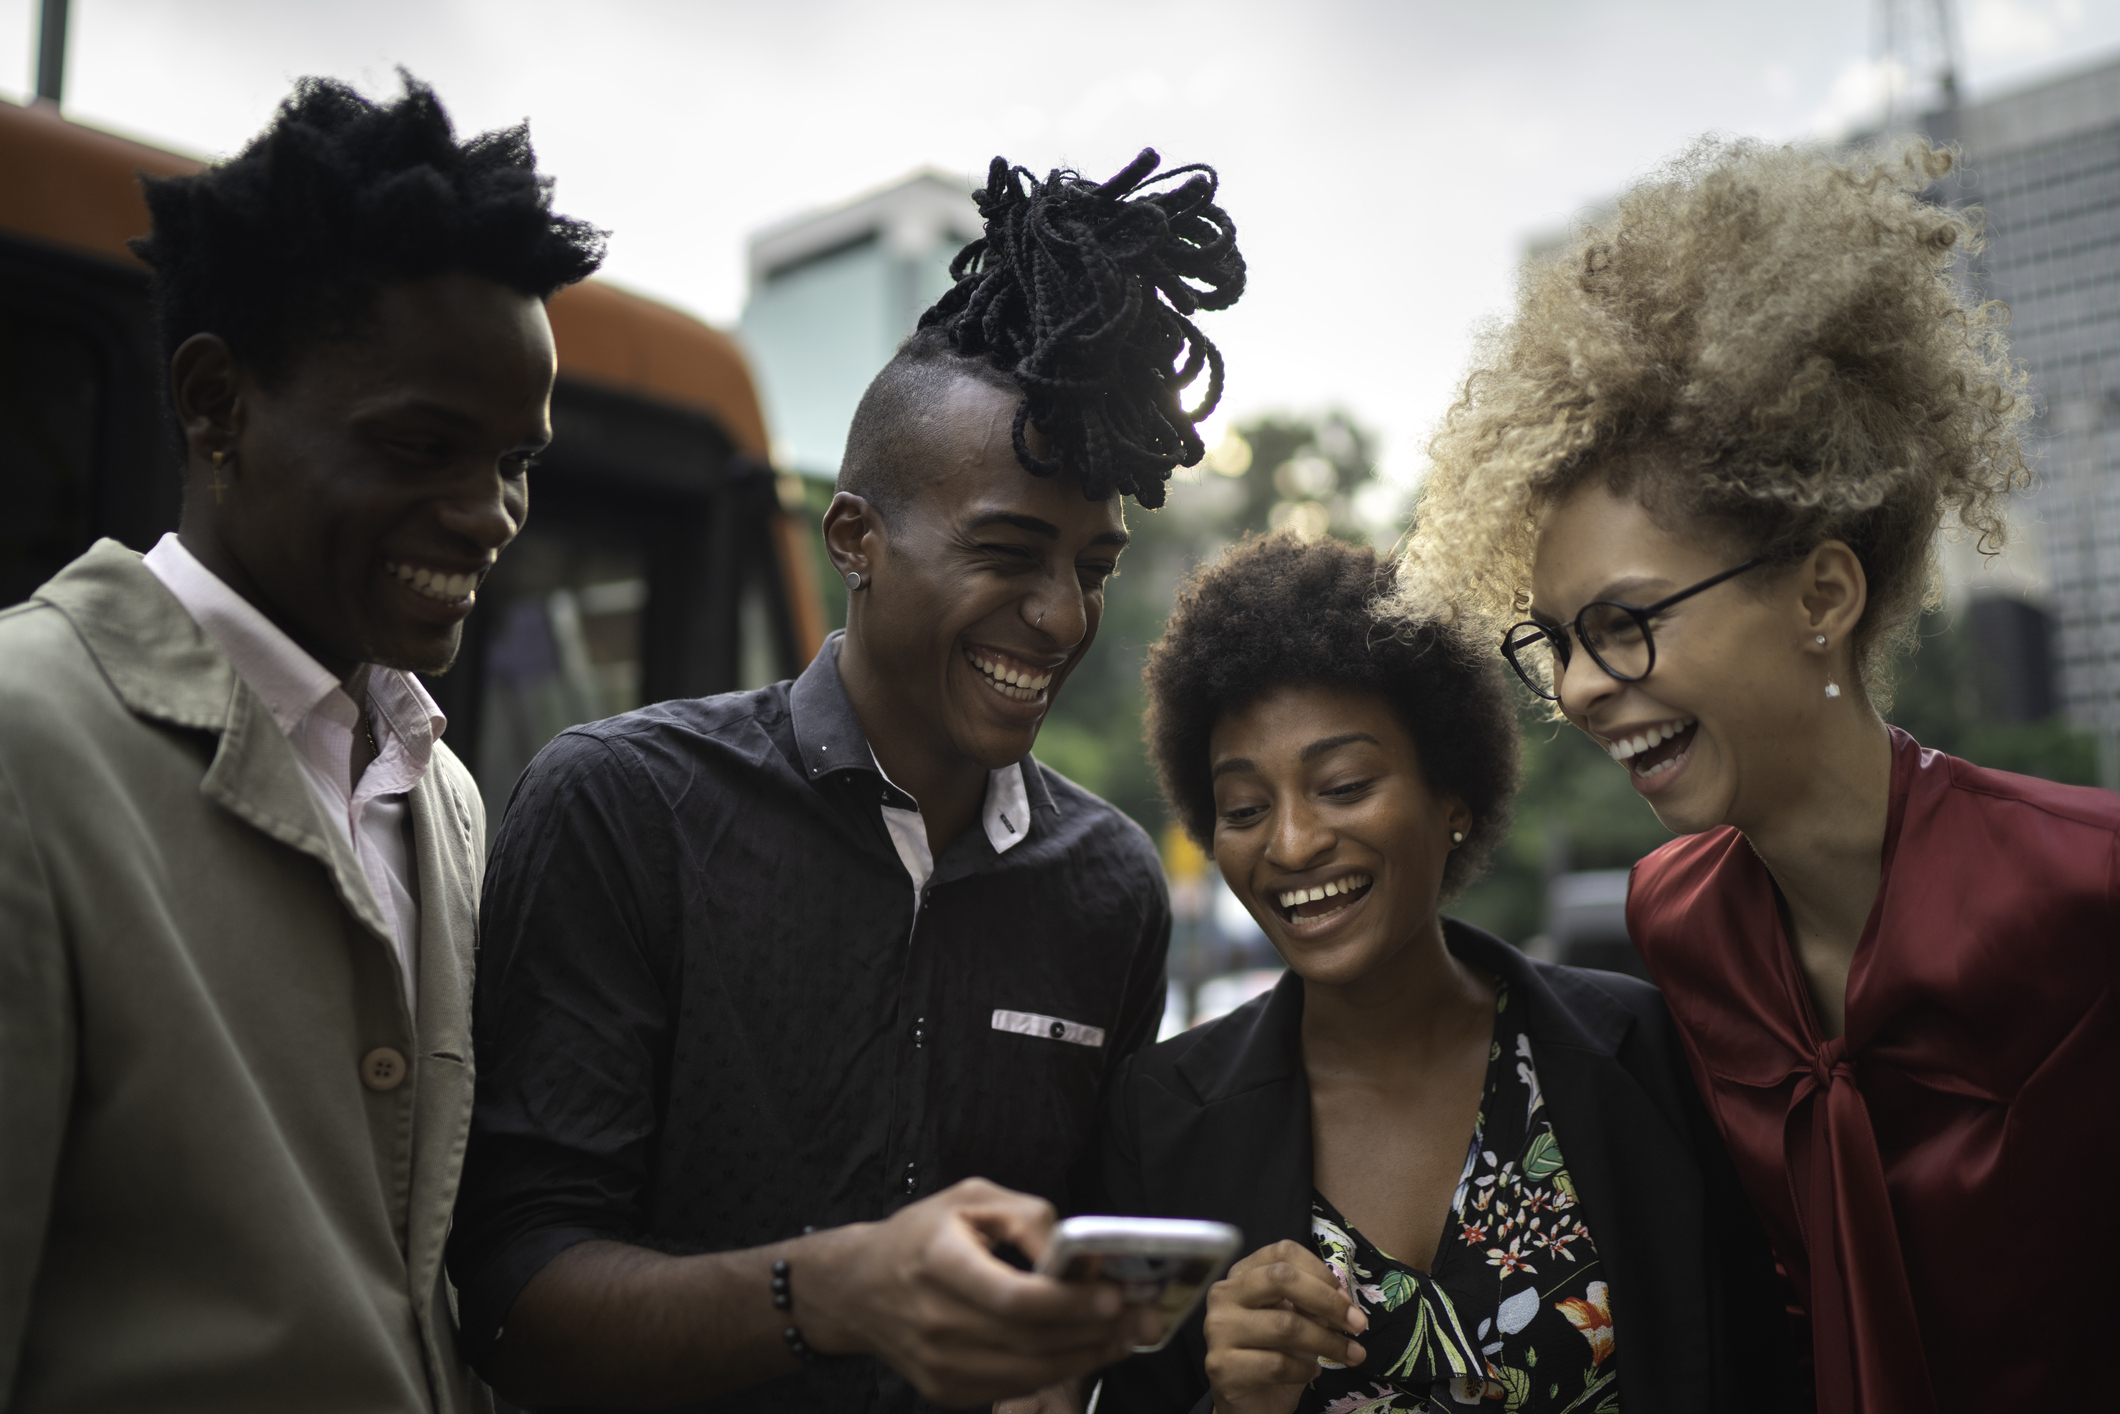 BlackRocks Startups is on a Mission to Empower Black Entrepreneurs in Brazil